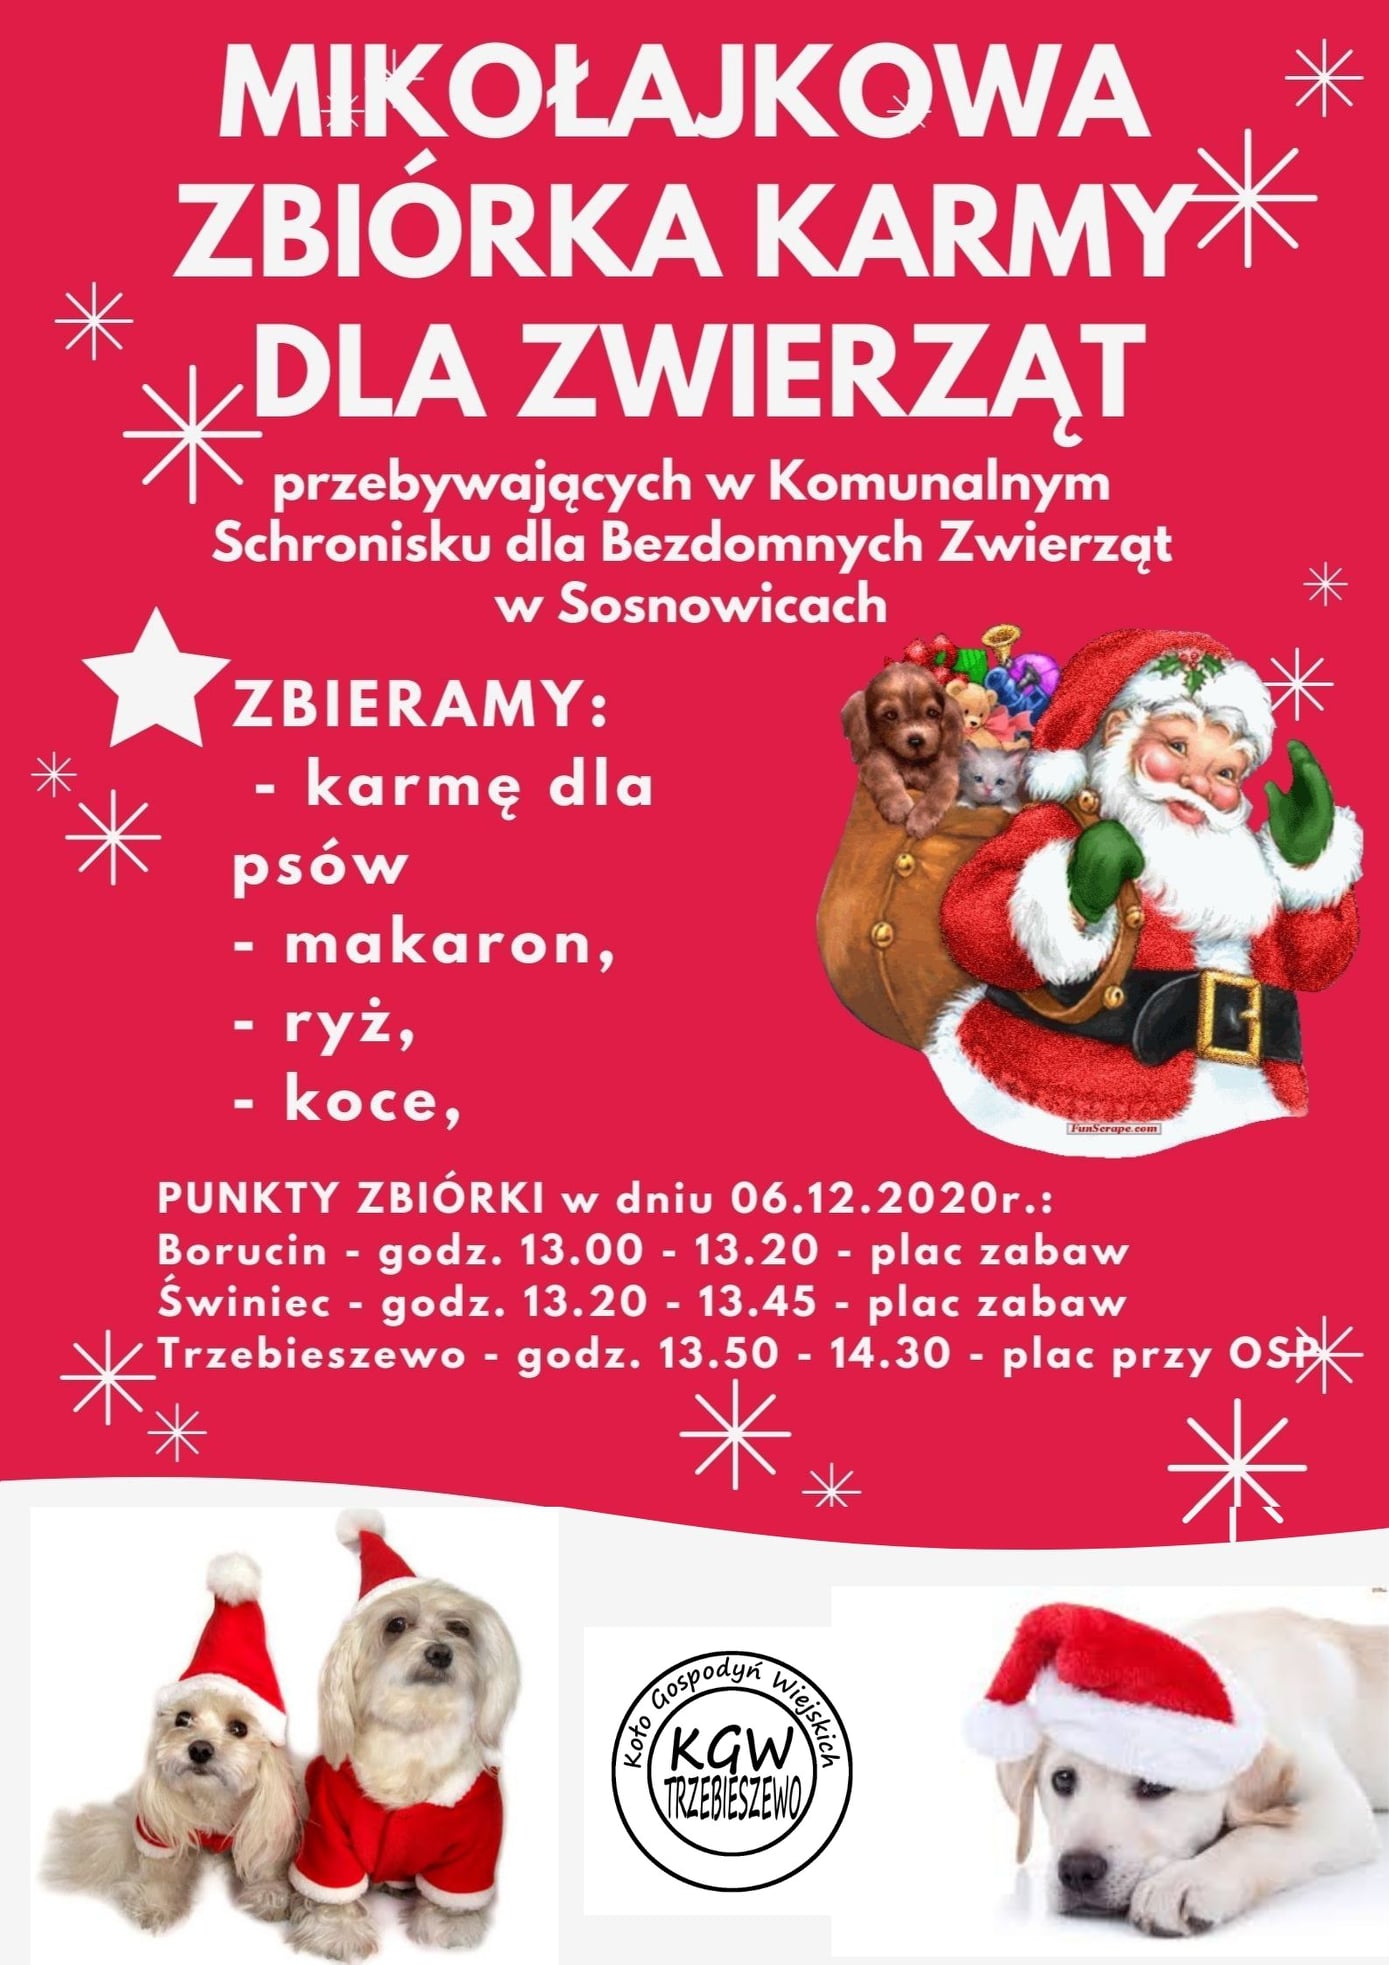 Mikołajkowa zbiórka karmy dla zwierząt ze schroniska w Sosnowicach